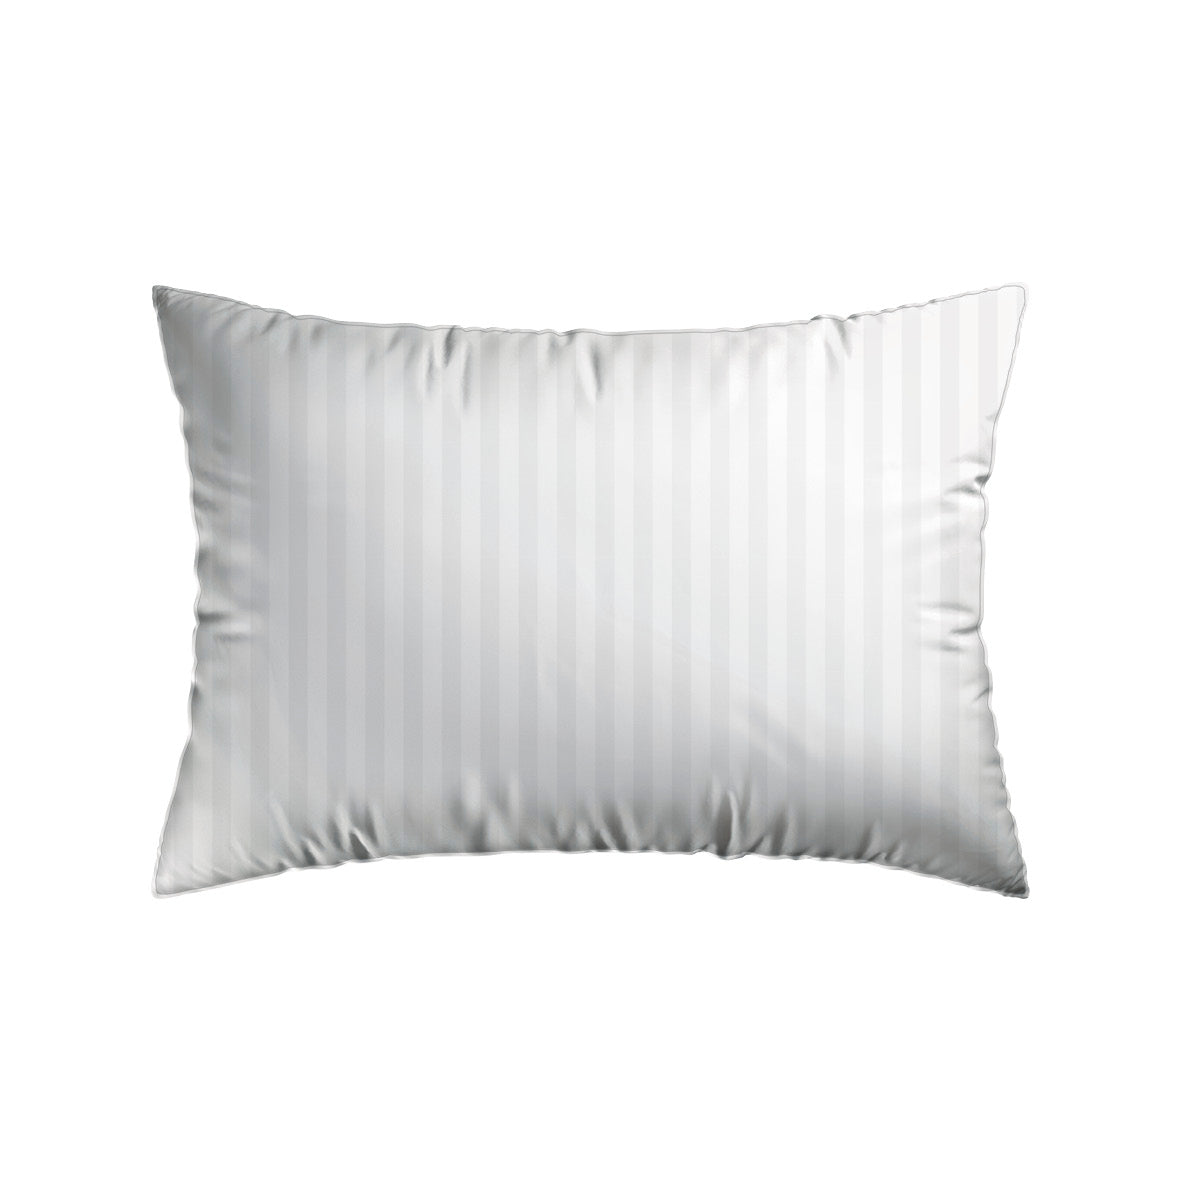 Pillowcase(s) cotton satin dobby stripe woven - White